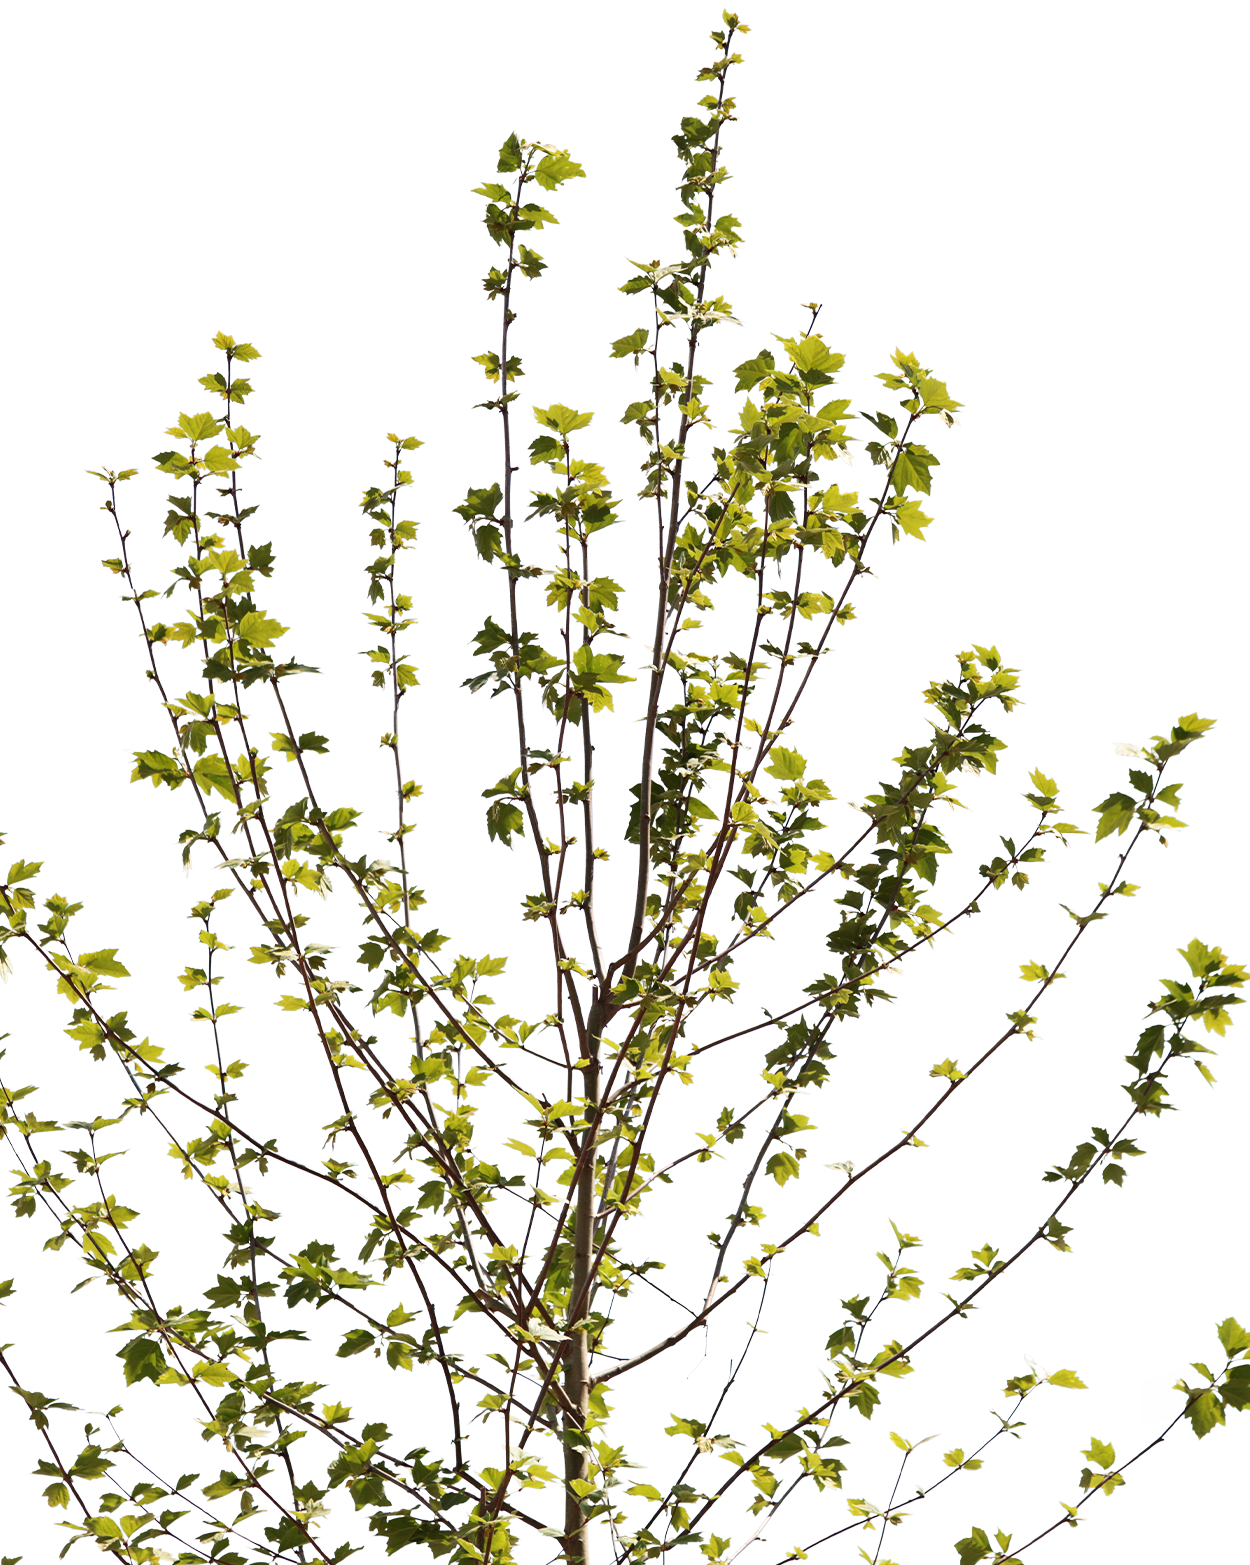 Platanus acerifolia S07